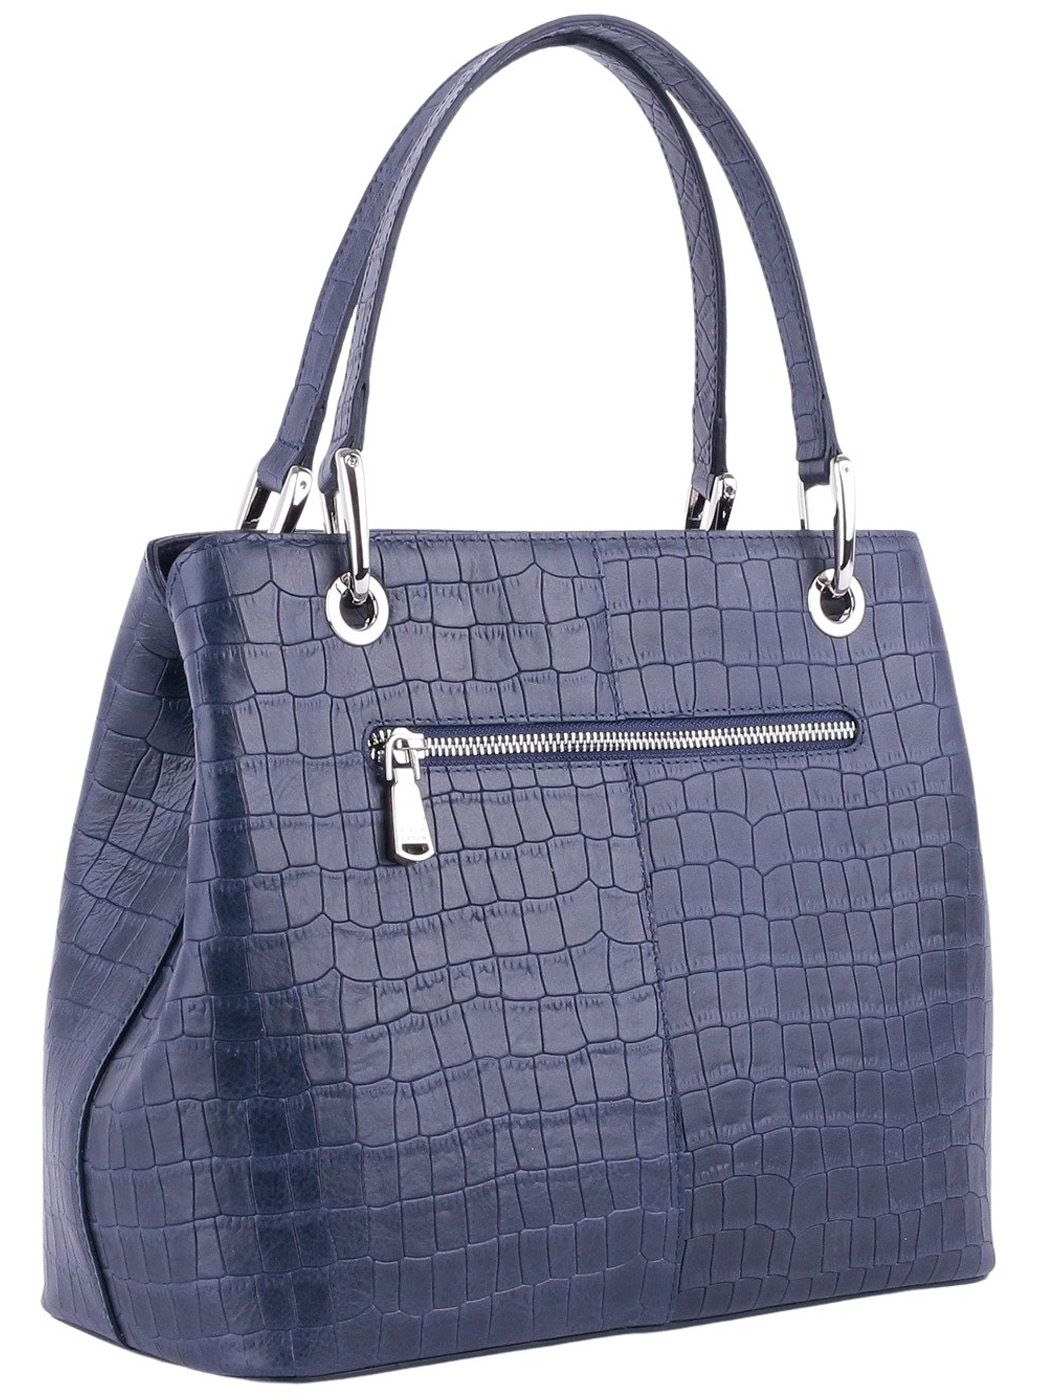 11261 FD крокодил сумка жен. всесезон. натуральная кожа/текстиль синий Fiato Dream